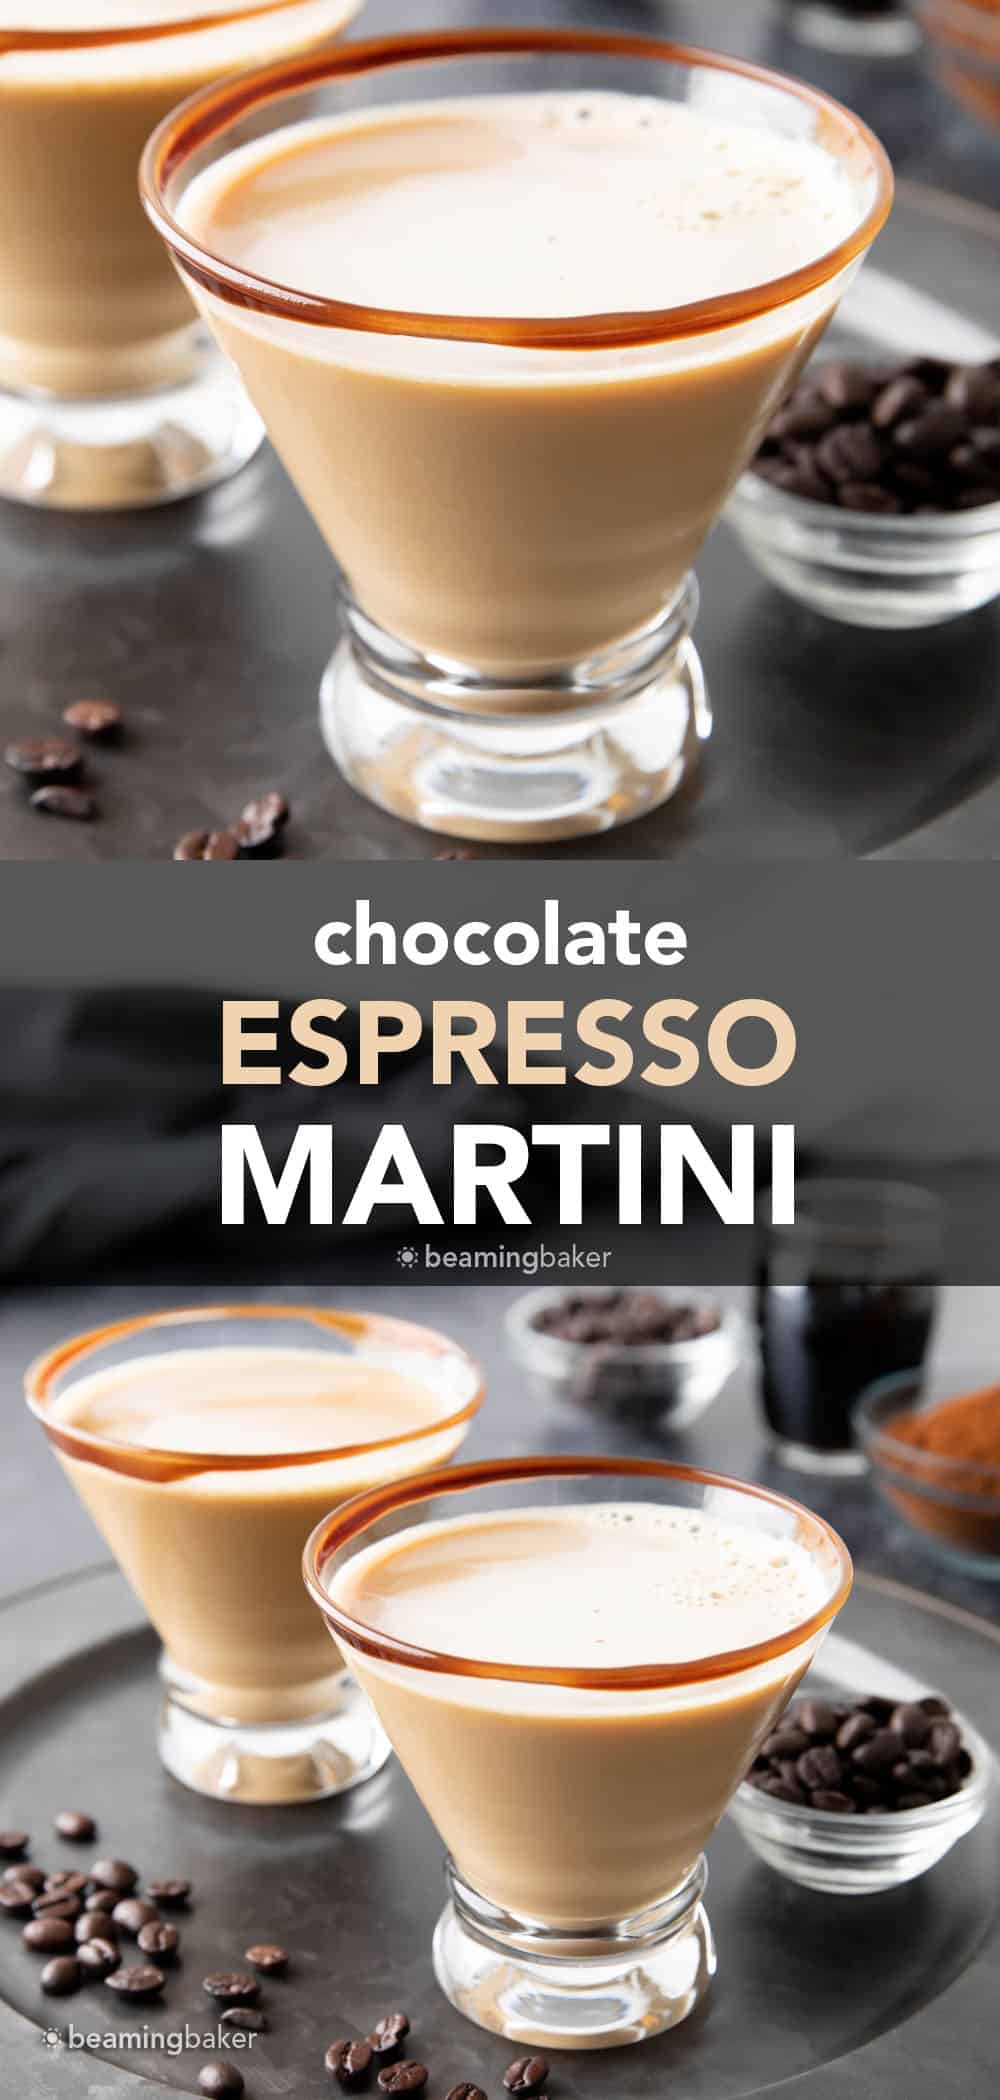 Chocolate espresso martini pin image